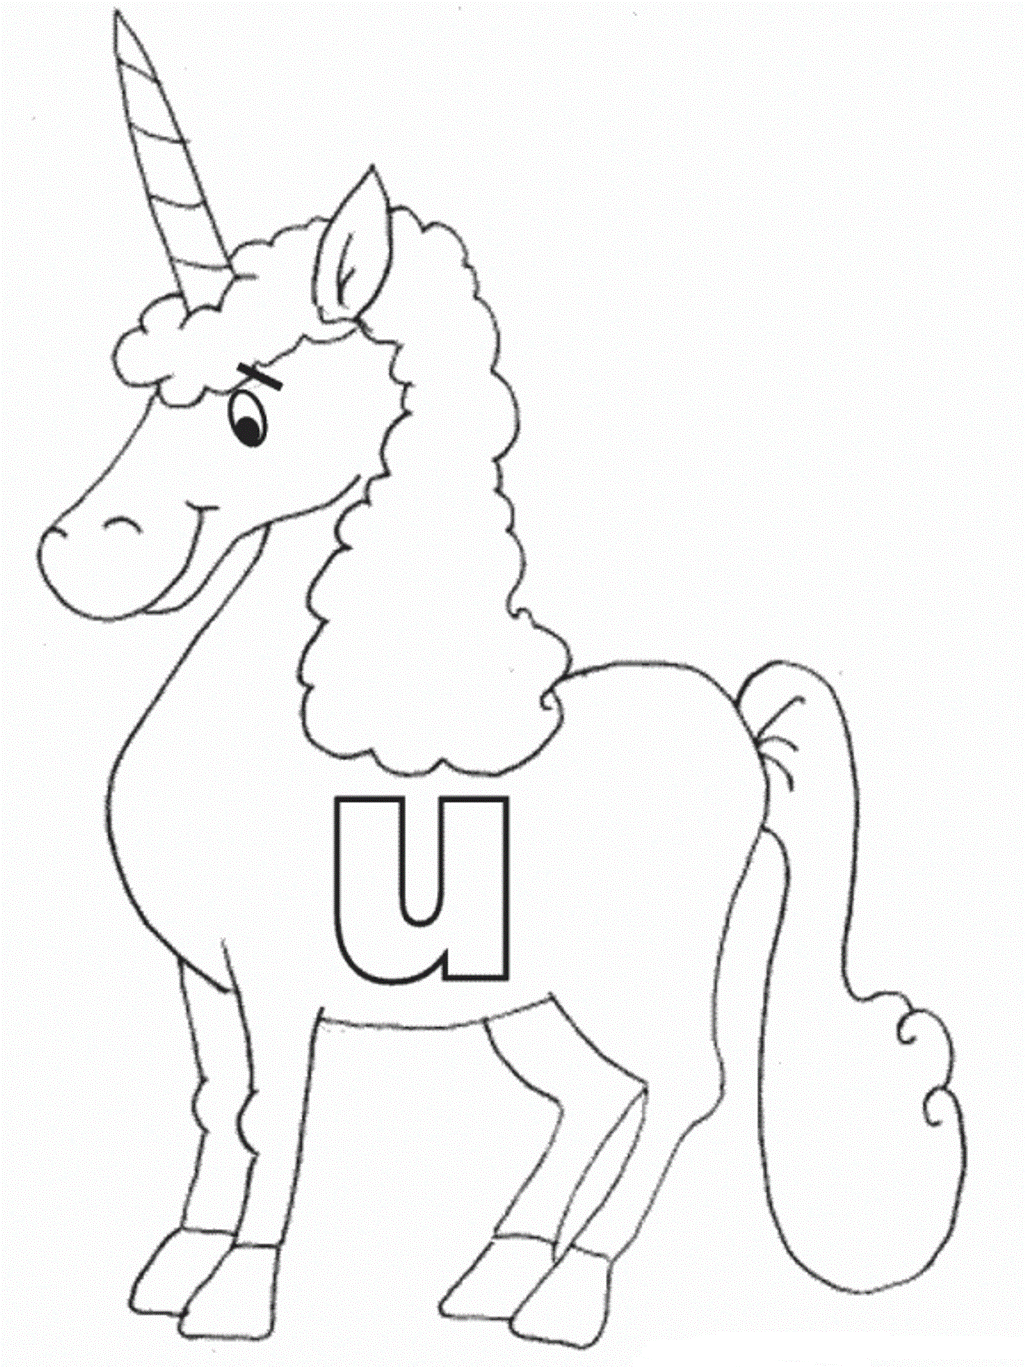 Lowercase U In Unicorn Alphabet S Freebb4e Coloring Page